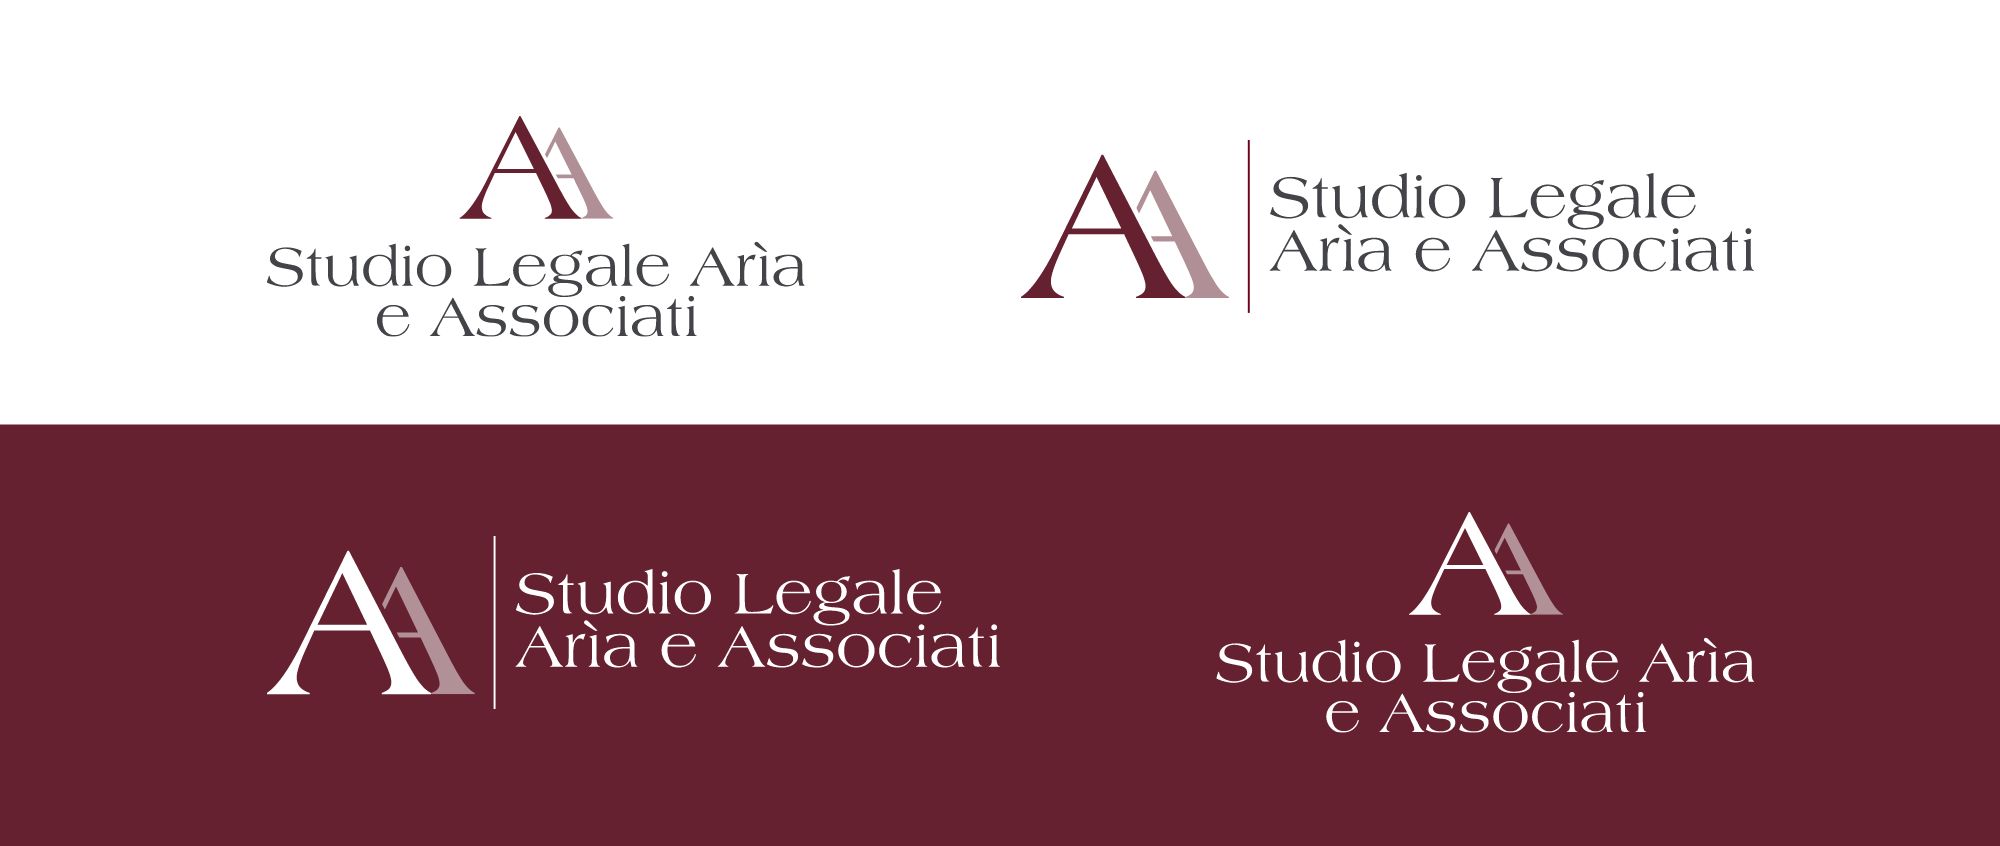 Randomlab-progetti-studio-legale-aria-logo-background